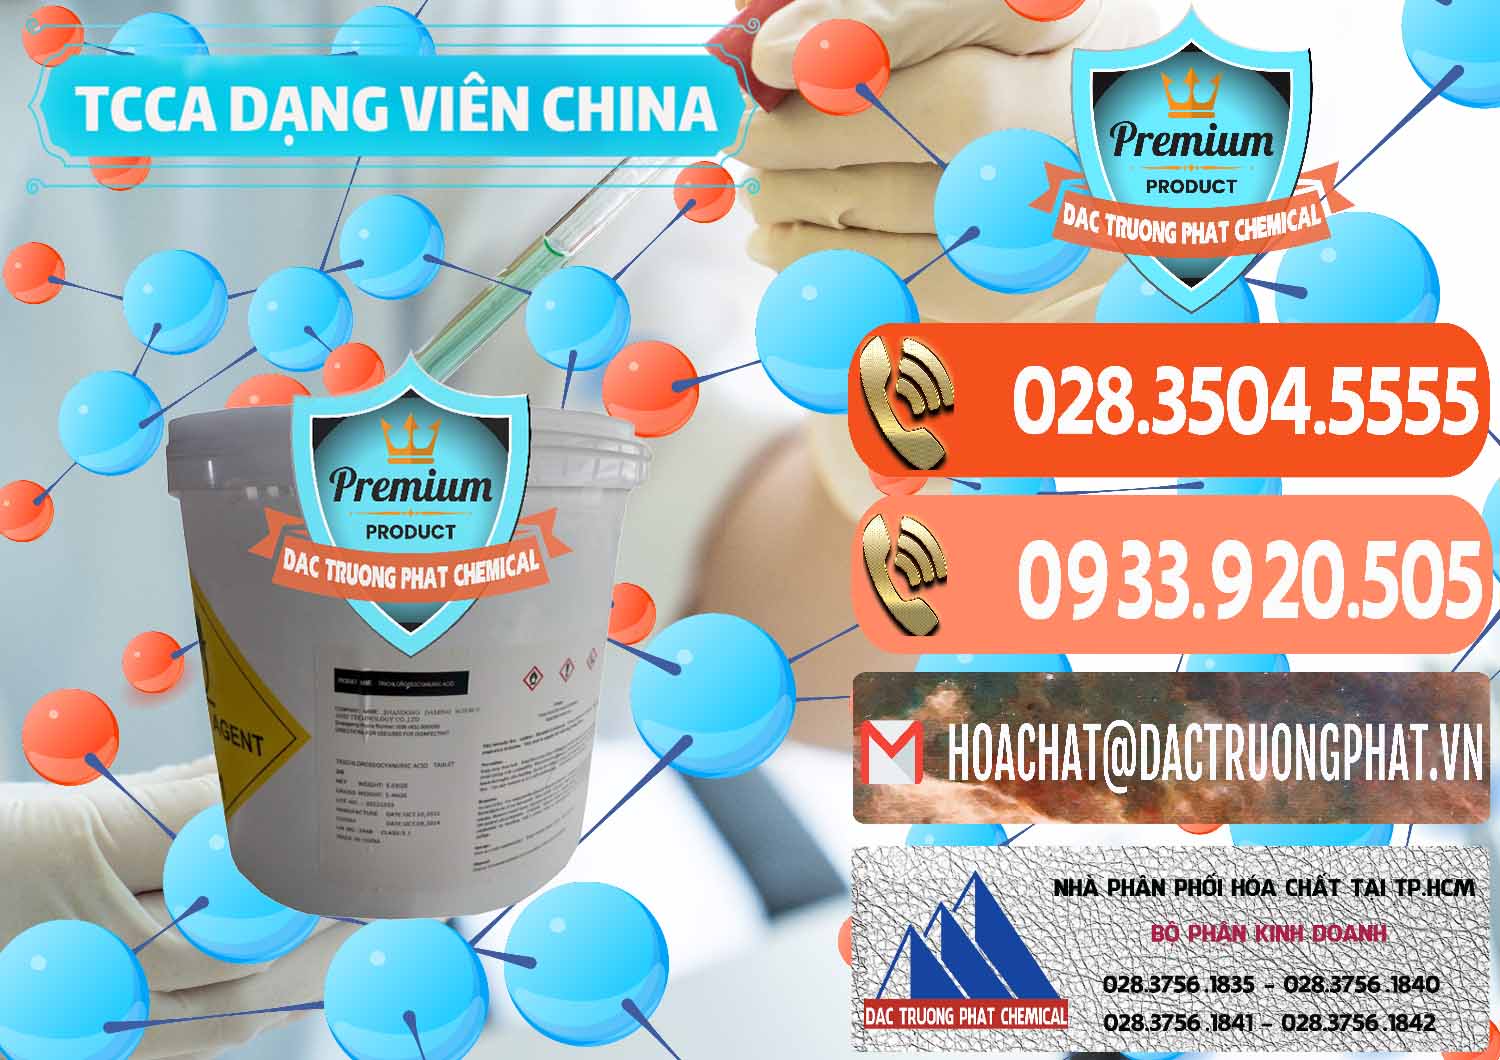 Nơi phân phối và bán TCCA - Acid Trichloroisocyanuric Dạng Viên Thùng 5kg Trung Quốc China - 0379 - Công ty chuyên kinh doanh và phân phối hóa chất tại TP.HCM - hoachatmientay.com